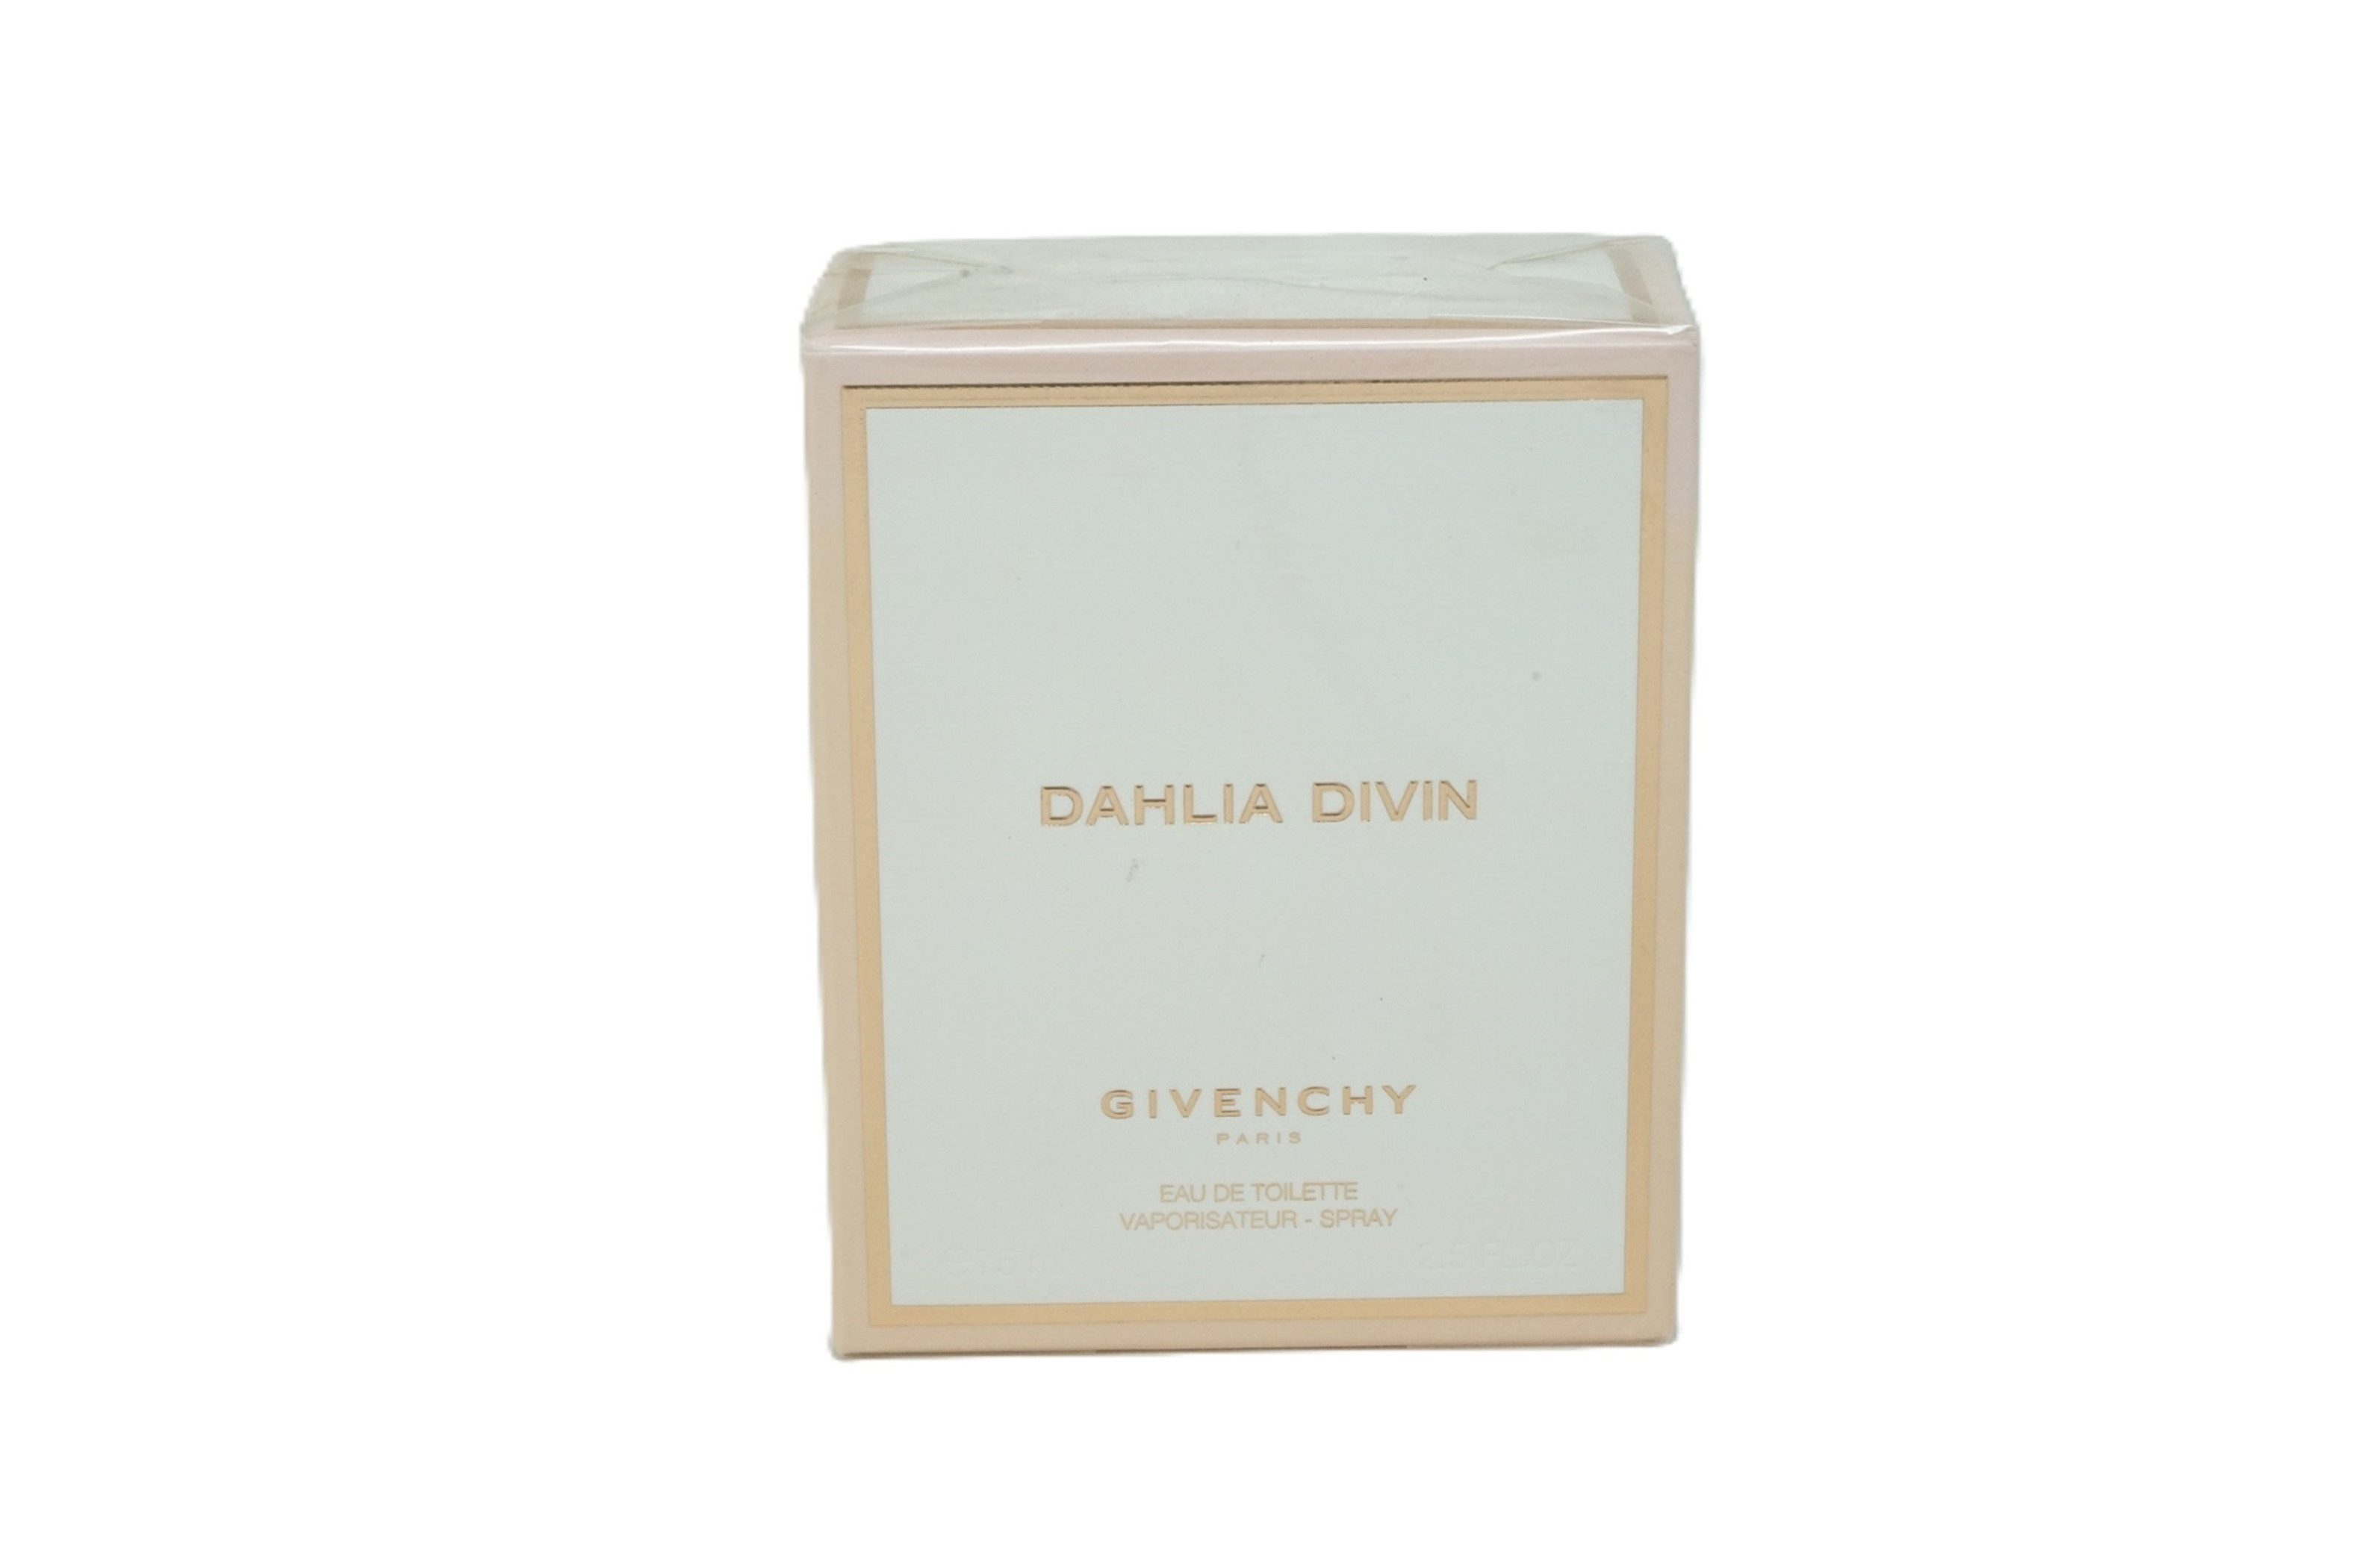 GIVENCHY Eau de Toilette Givenchy Dahlia Divin Eau de Toilette Spray 75 ml